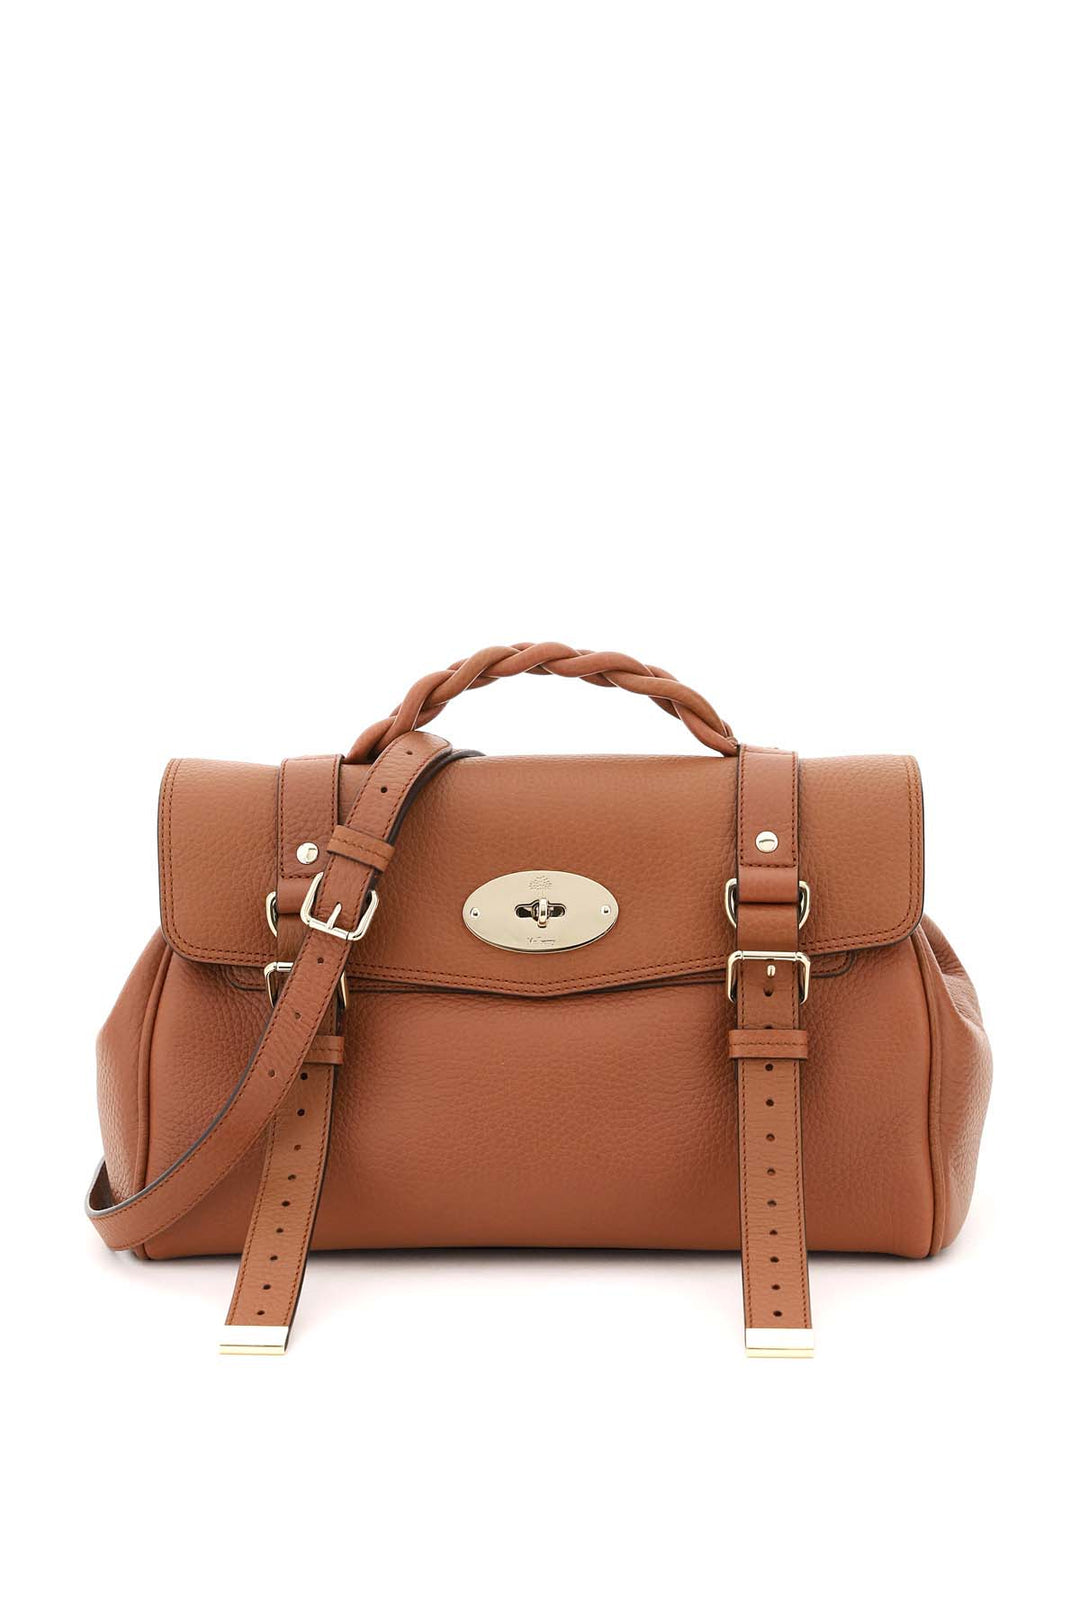 Mulberry Alexa Medium Handbag   Marrone